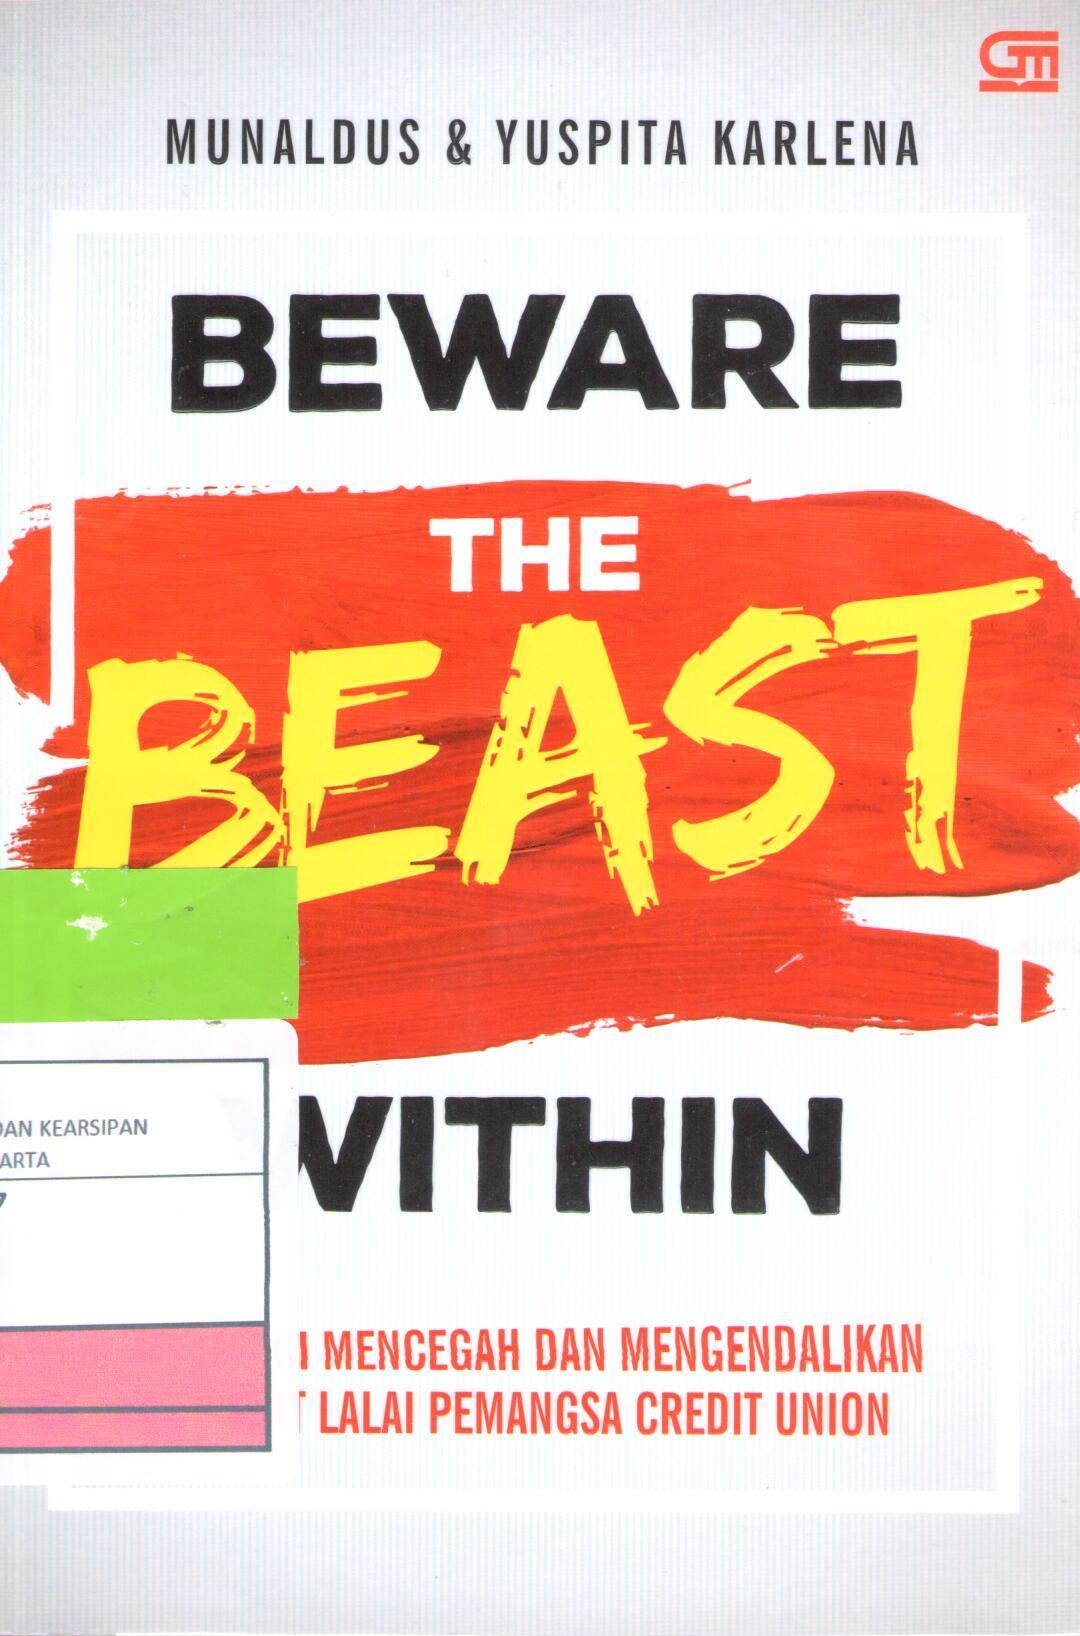 Beware the beast within :  strategi mencegah dan mengendalikan kredit lalai pemangsa credit union